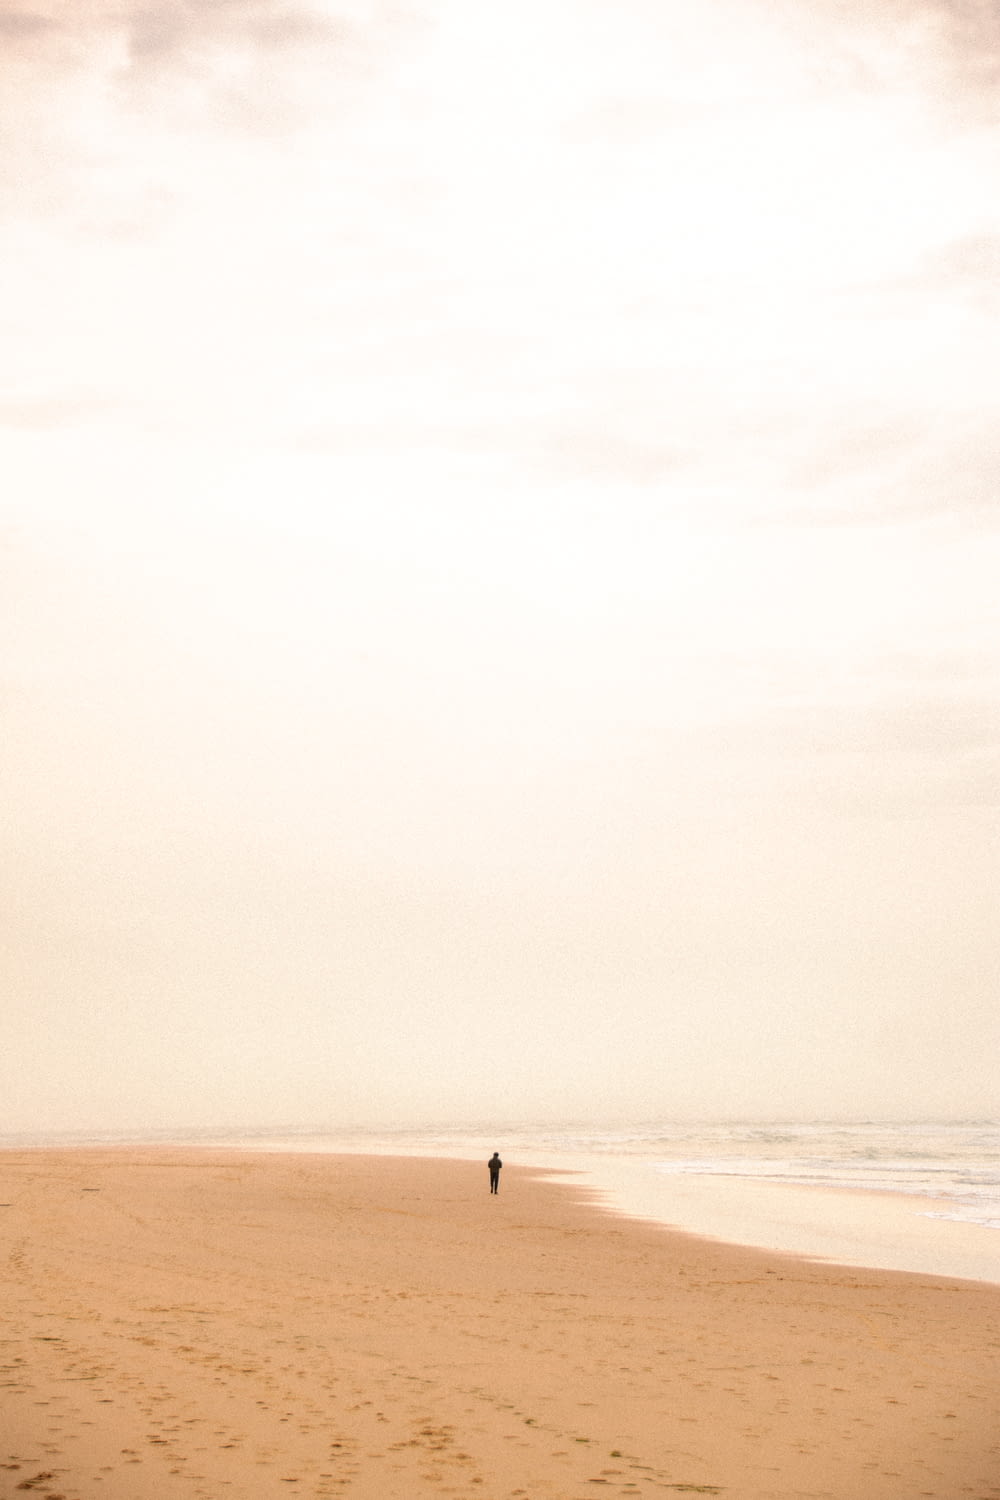 a lone person walking on a beach near the ocean